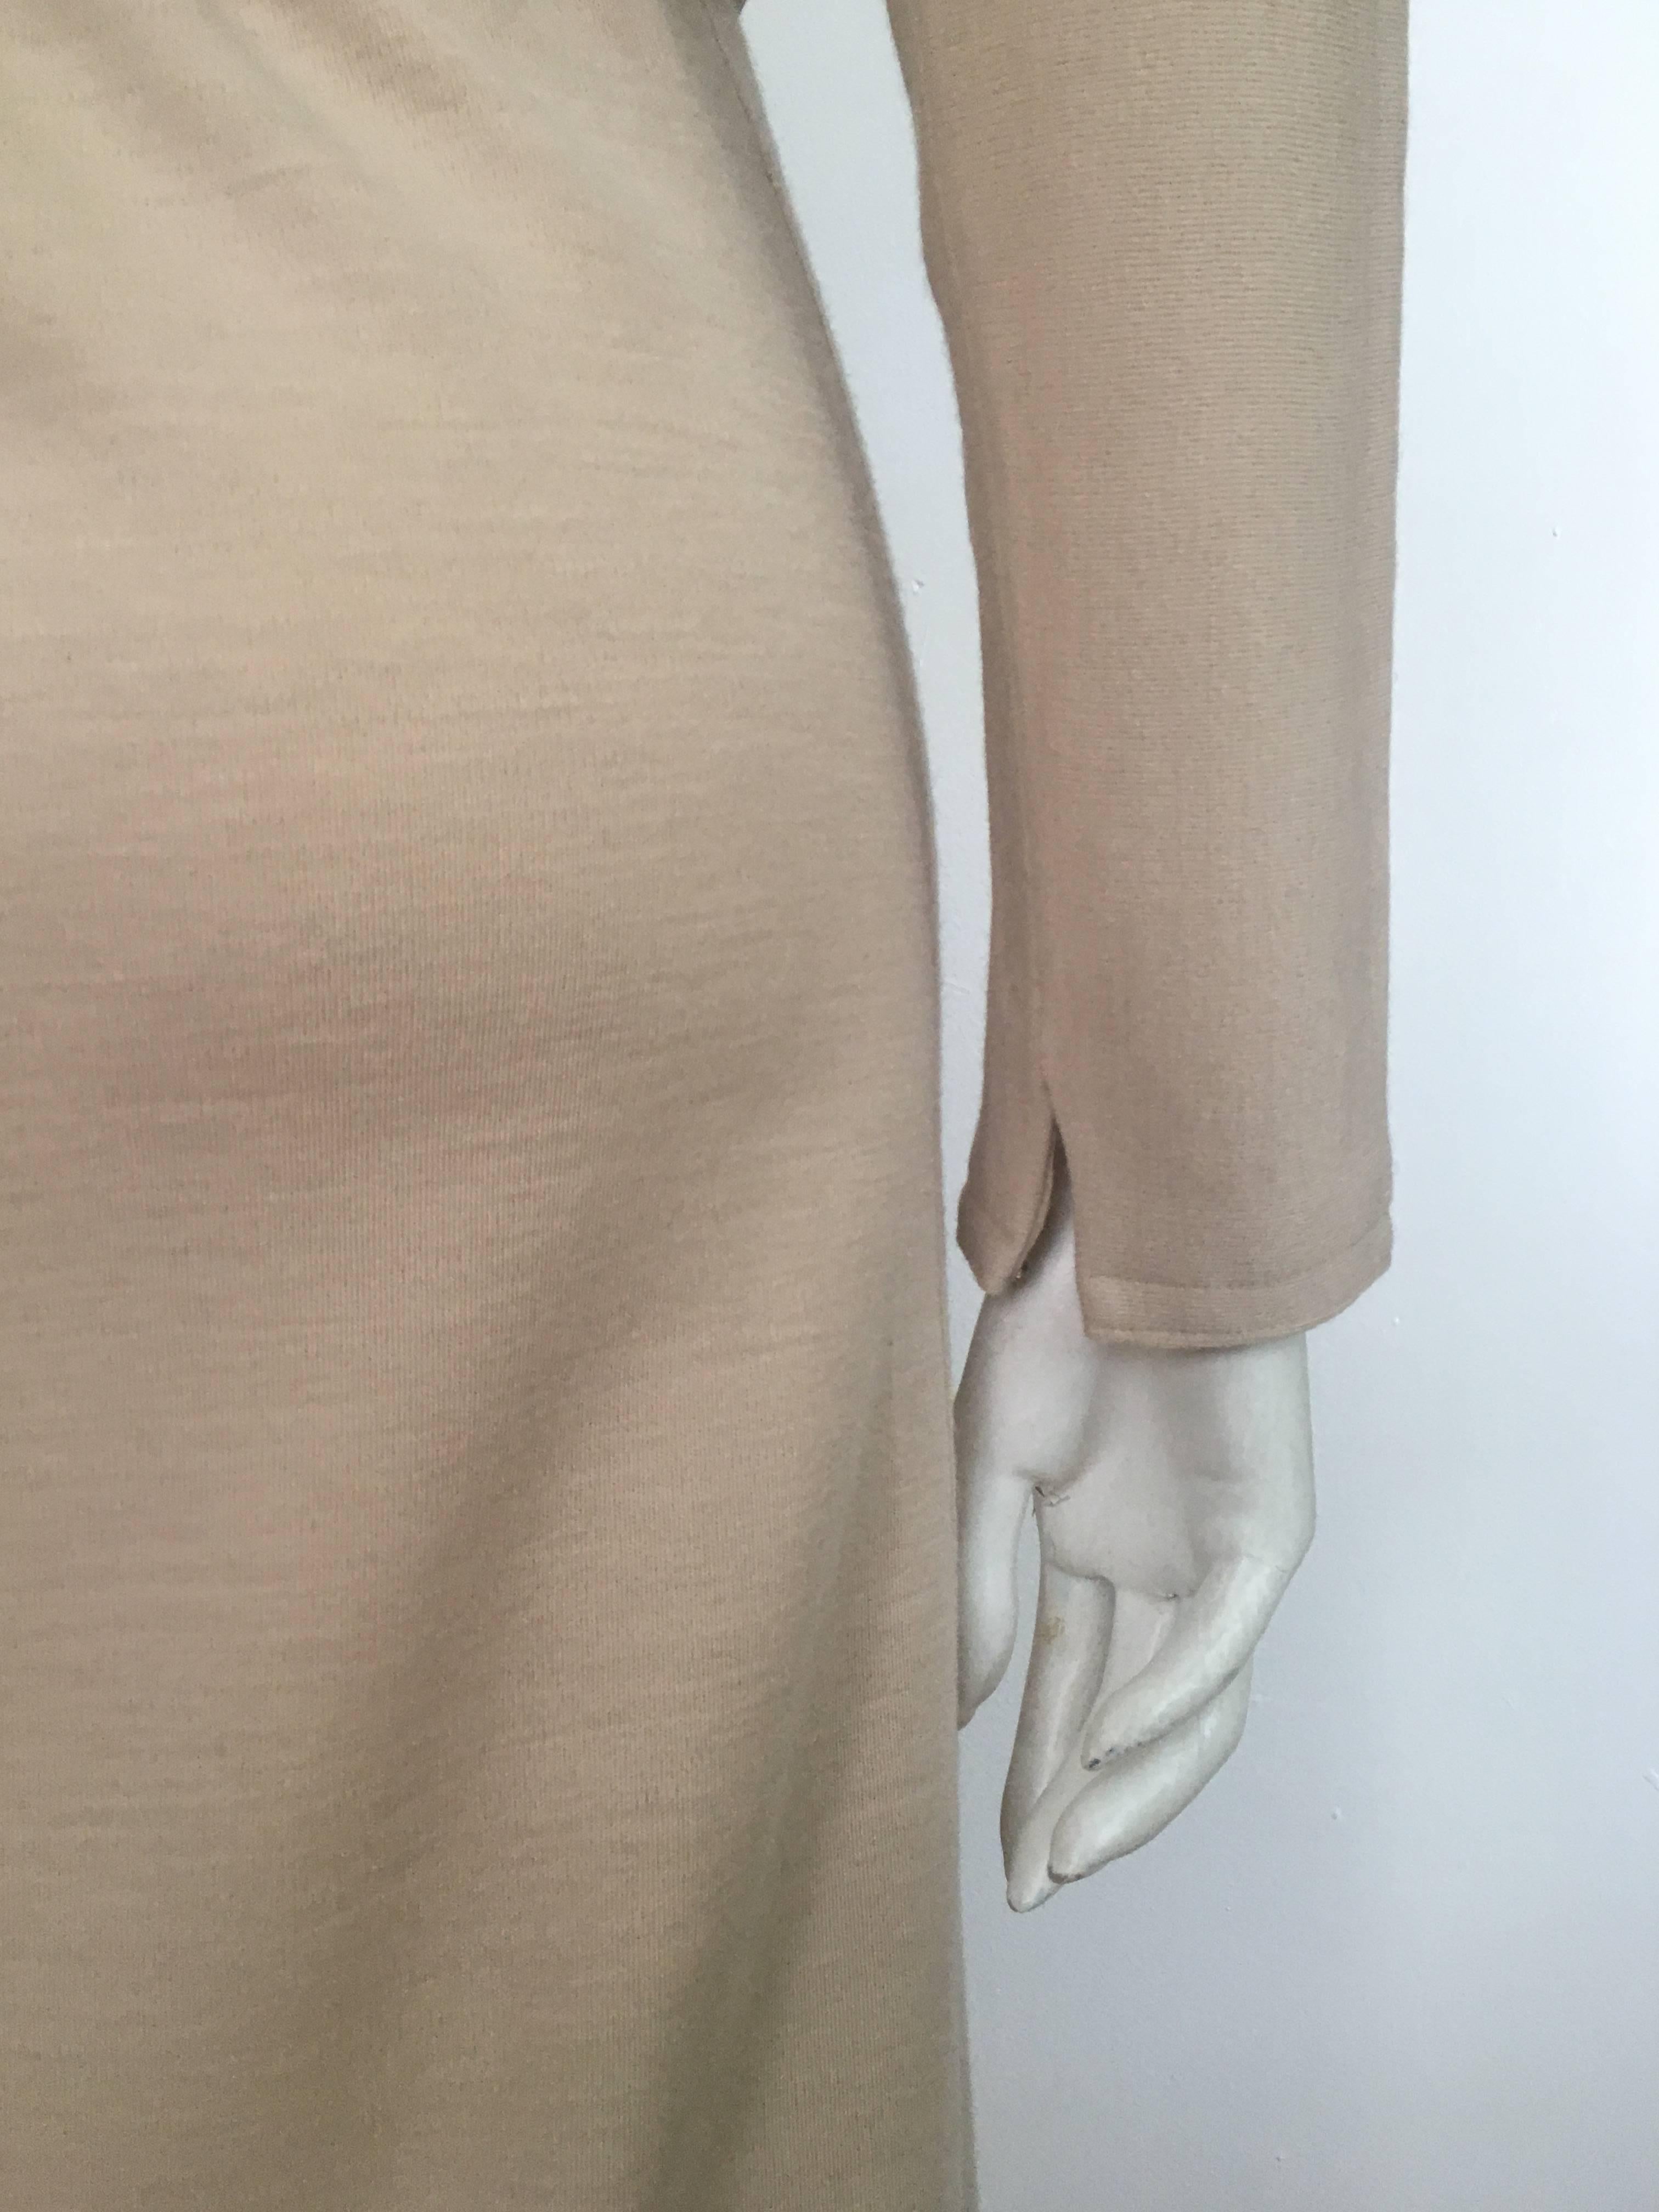 Geoffrey Beene Boutique 1970s Wool Knit Tan Long Sleeve Dress Size 8. For Sale 6